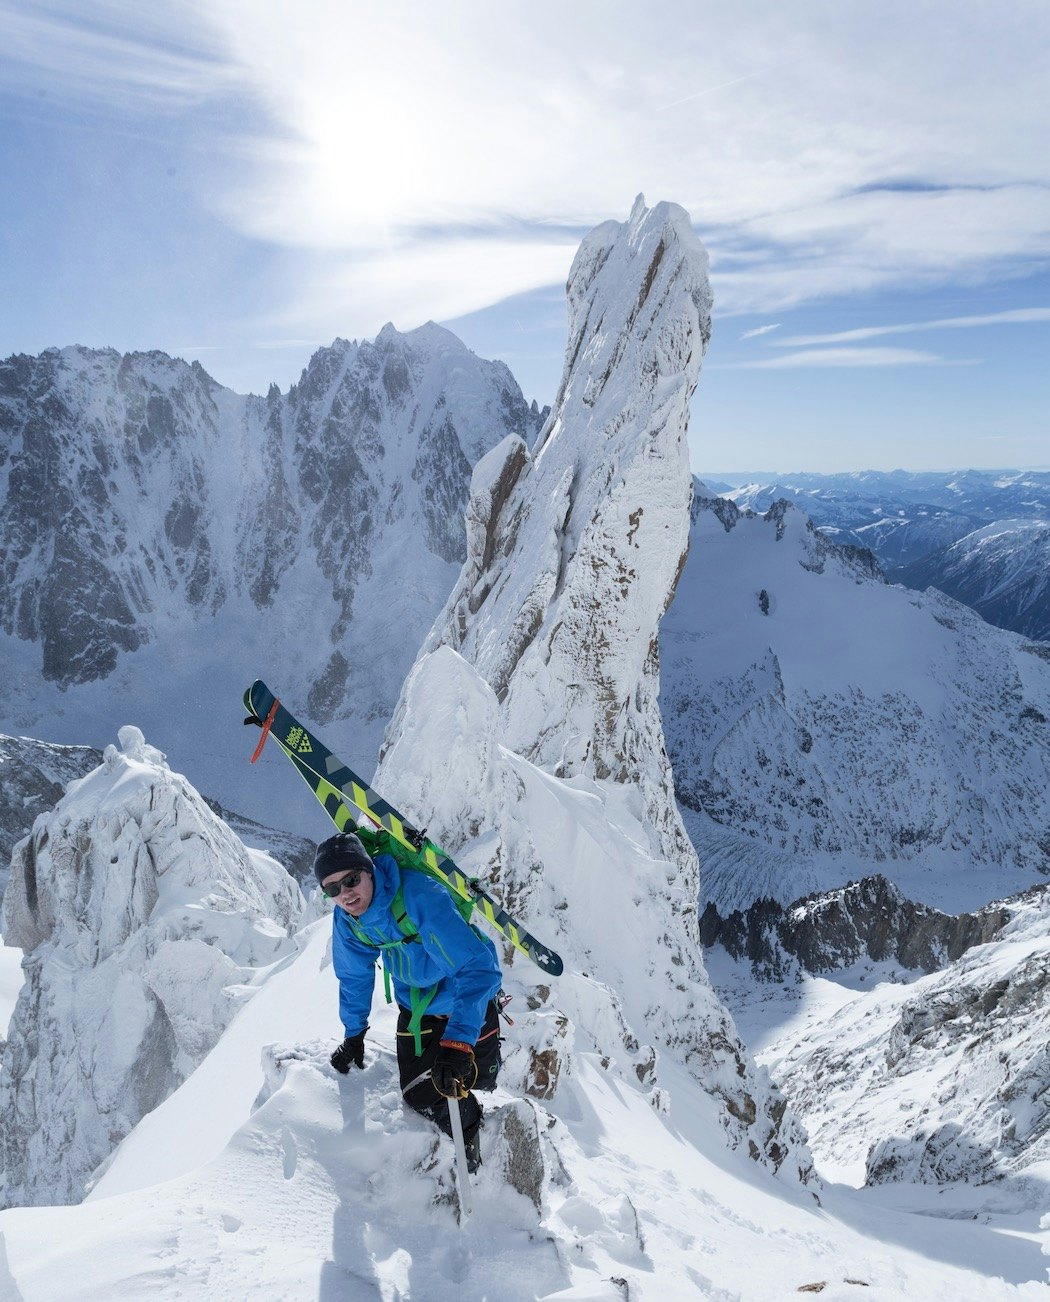 PÅ TUR: Nikolai er lommekjent i Chamonix, etter å ha tilbragt tre sesonger på rad i den franske skimetropolen. Bilde: Bruno Compagnet